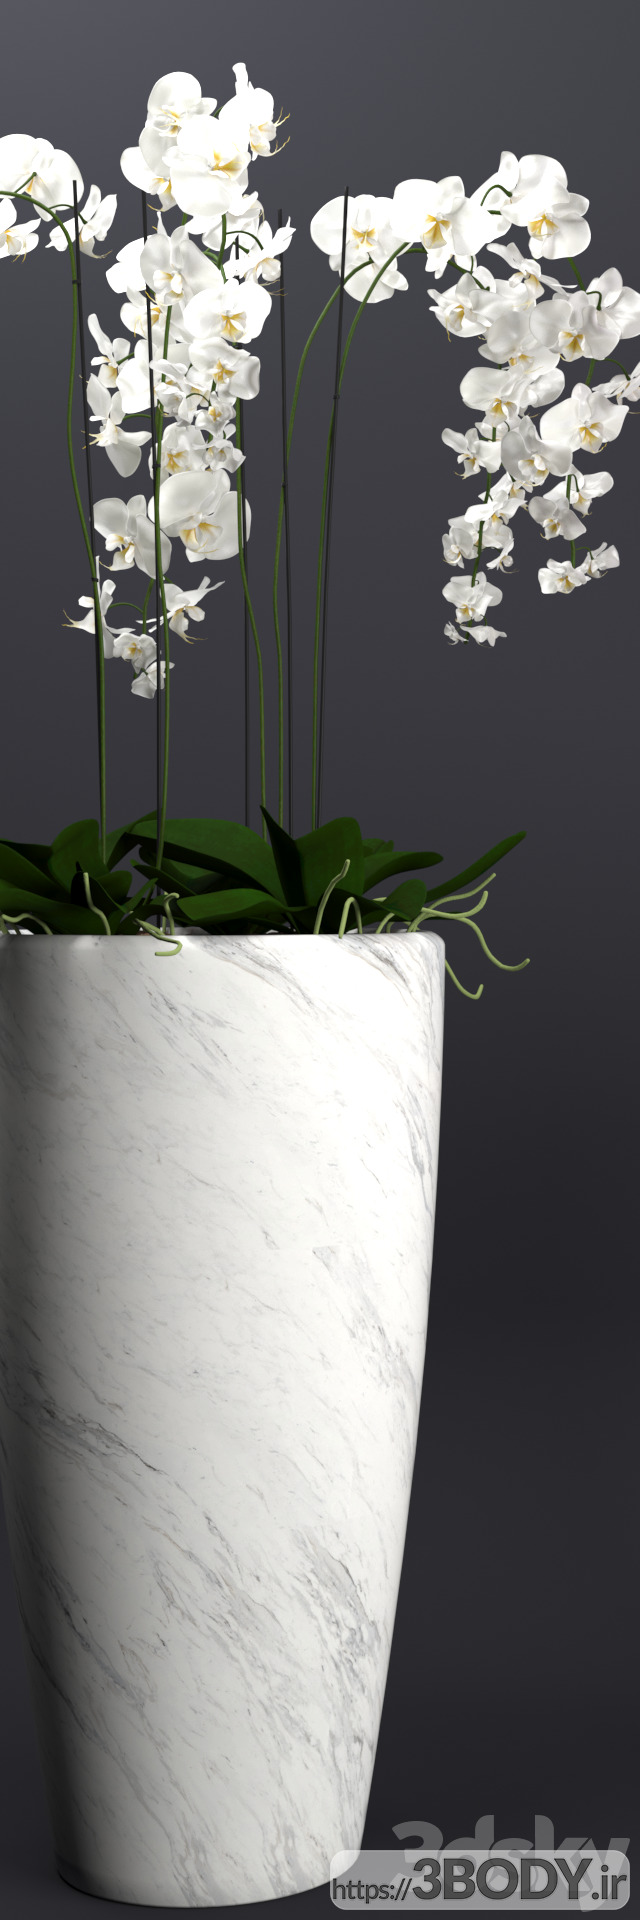 مدل سه بعدی دسته گل  و گلدان ارکیده عکس 3